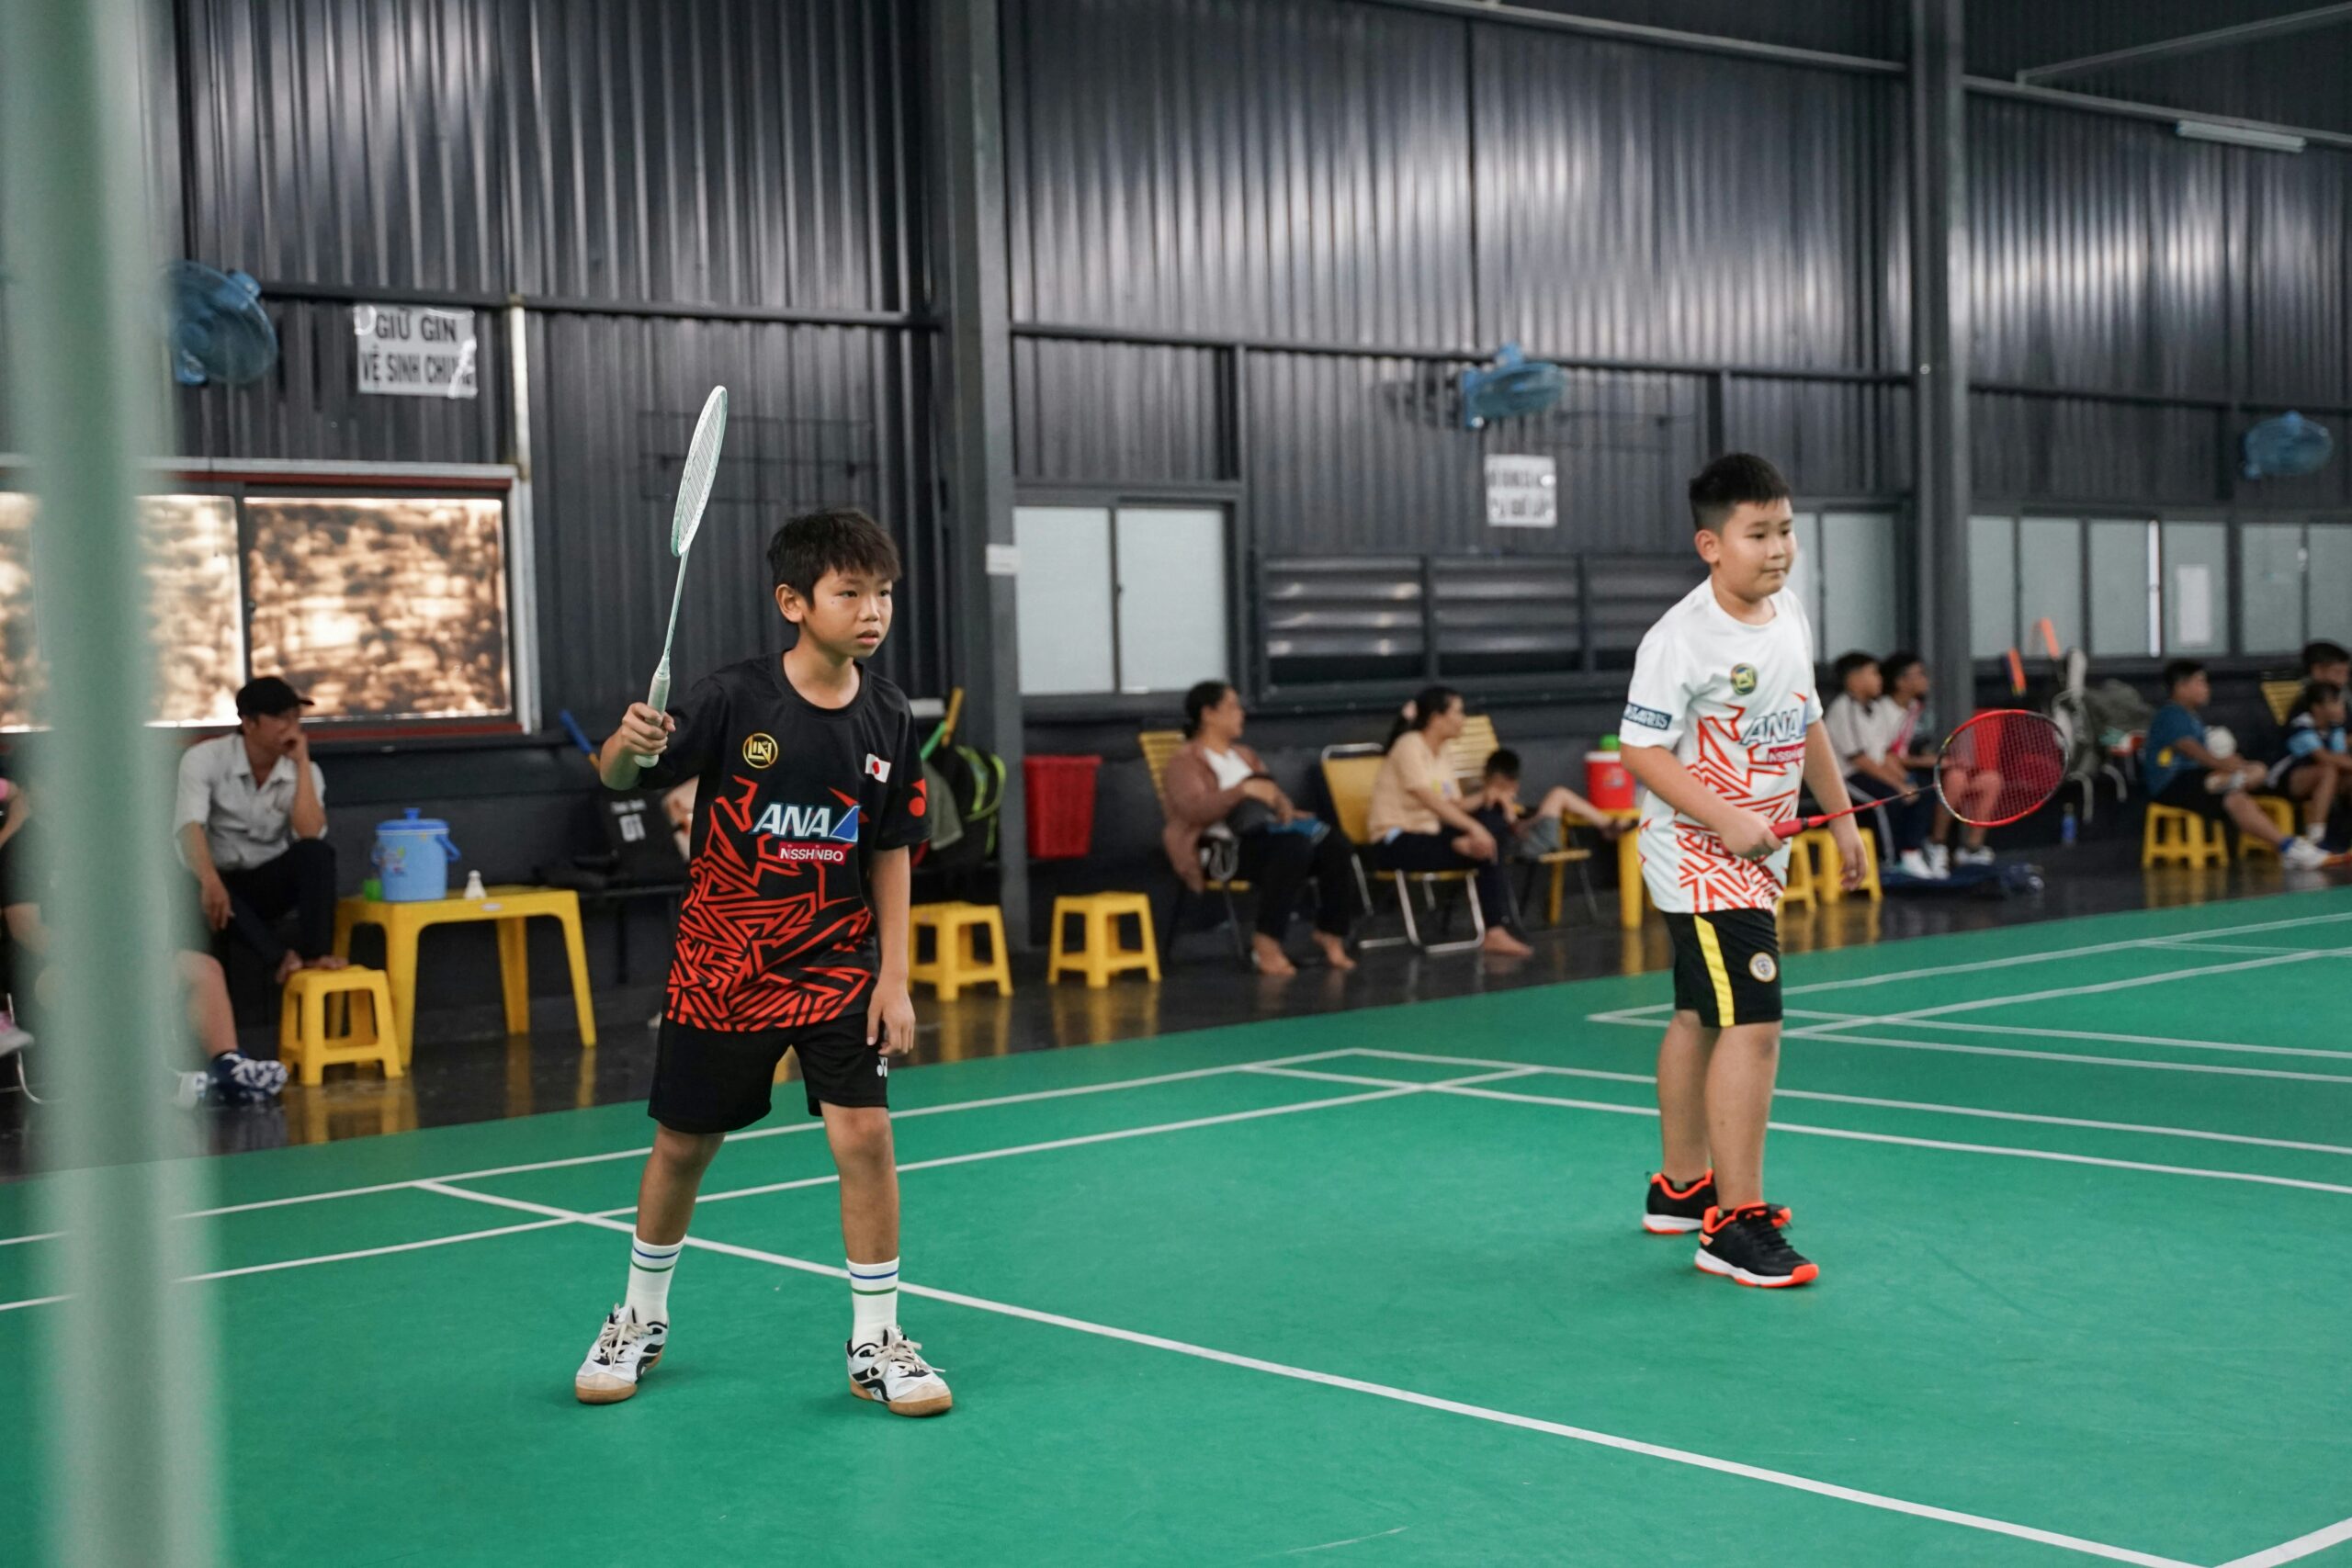 découvrez les règles essentielles du badminton pour jouer avec succès. apprenez les principes de base du jeu, les fautes à éviter et bien plus encore.